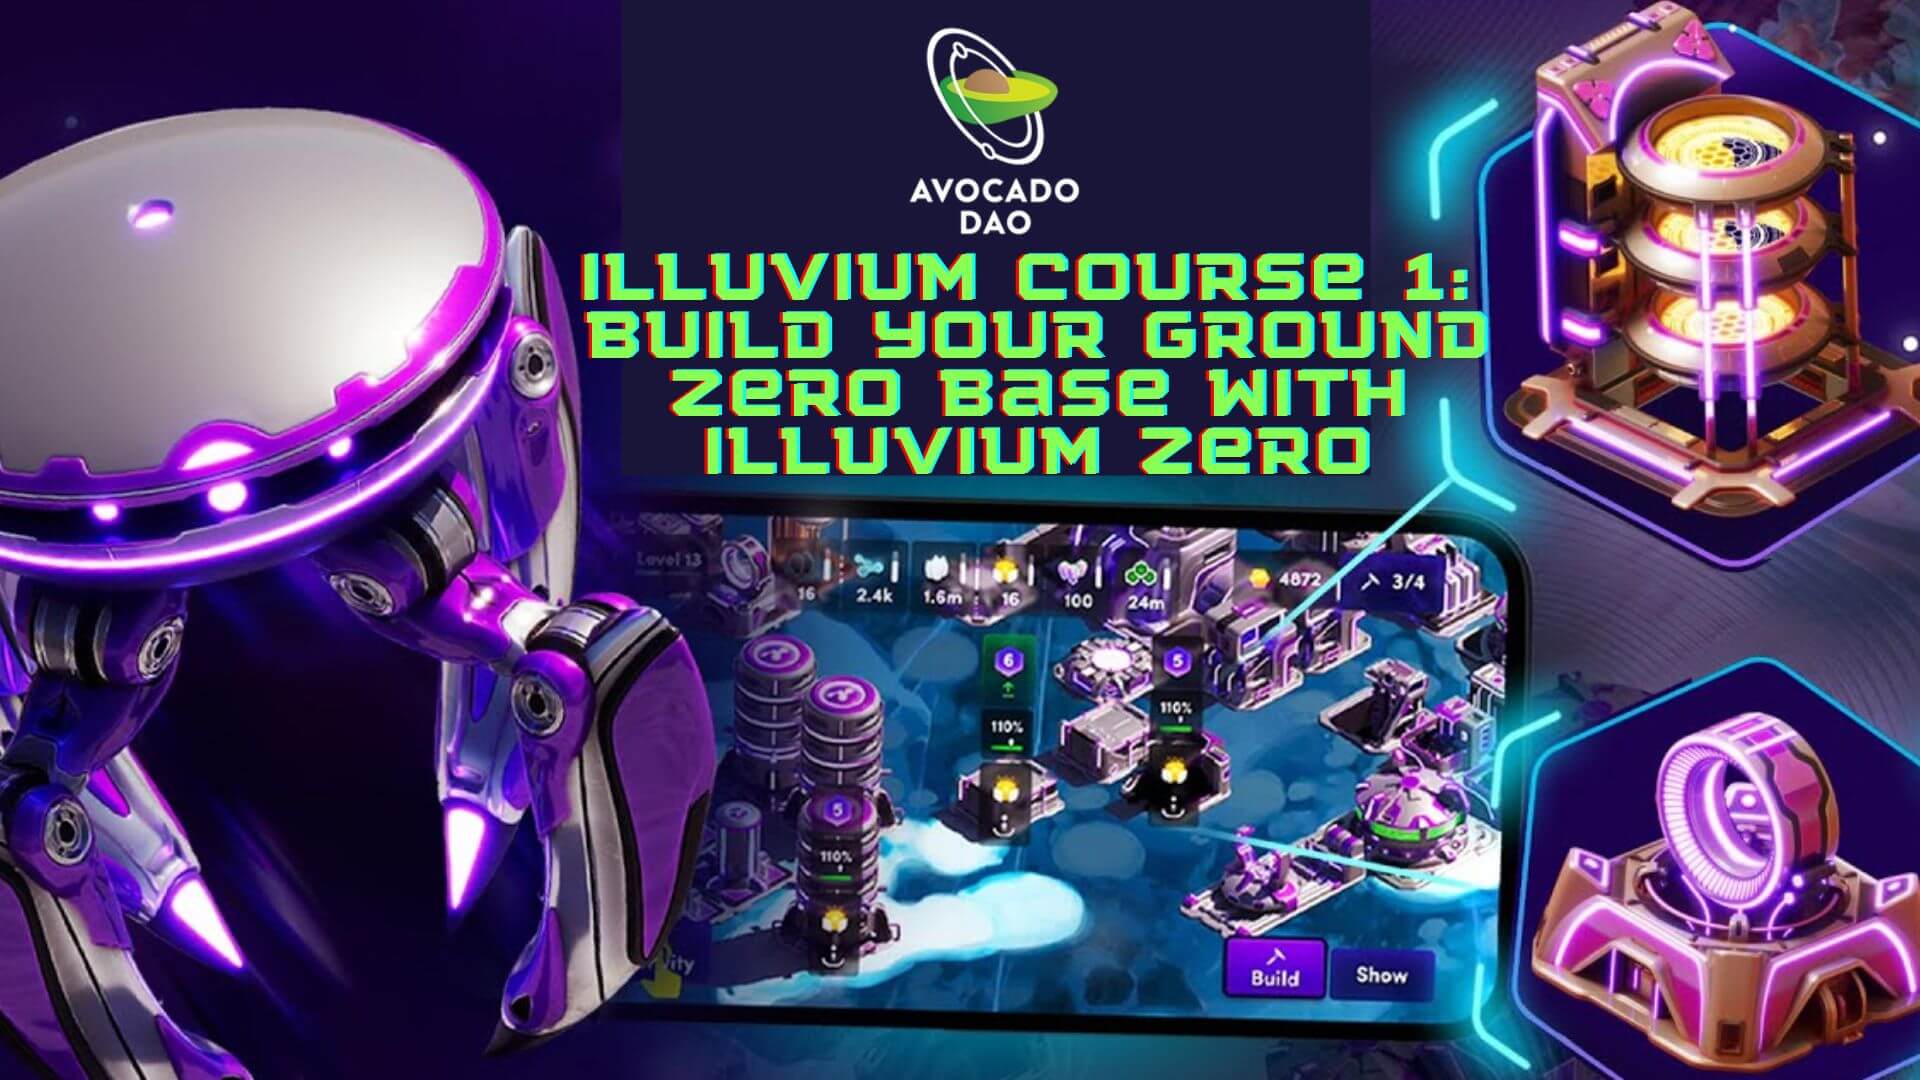 Illuvium Course 1: Build your ground zero base with Illuvium Zero